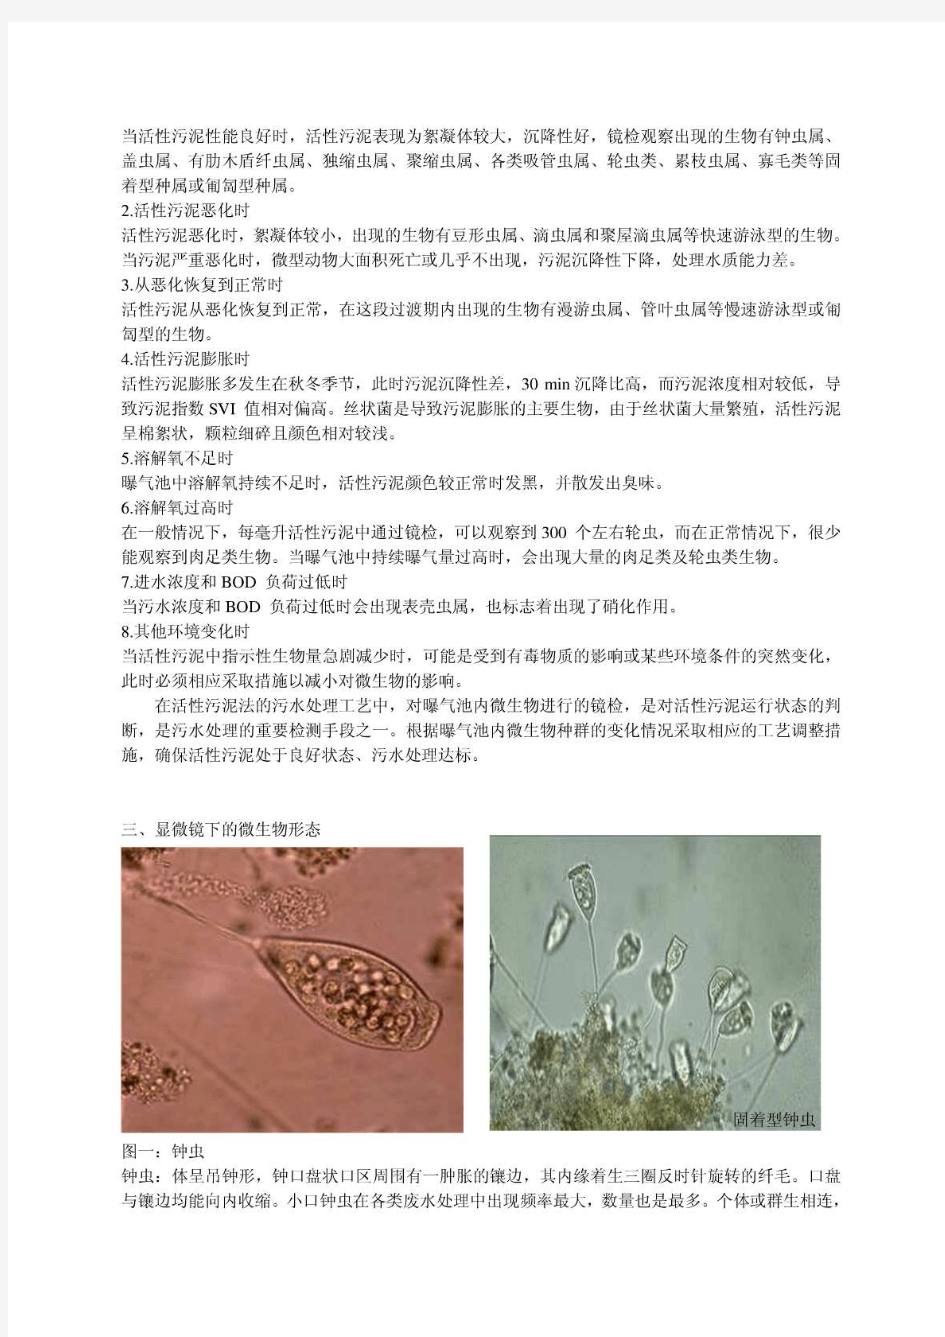 活性污泥中微生物的观察(整理)